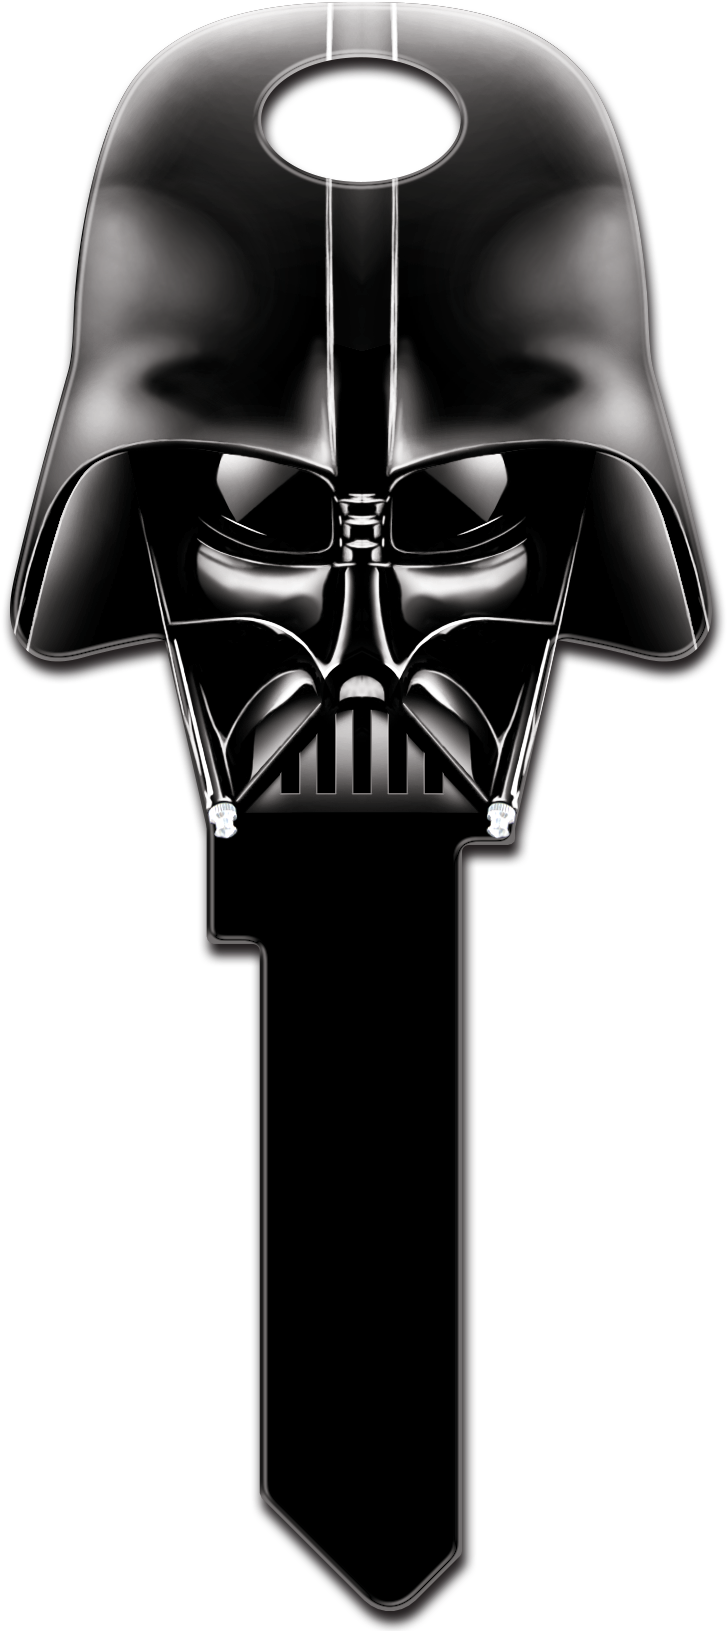 Fondo de imagen PNG del casco Darth Vader